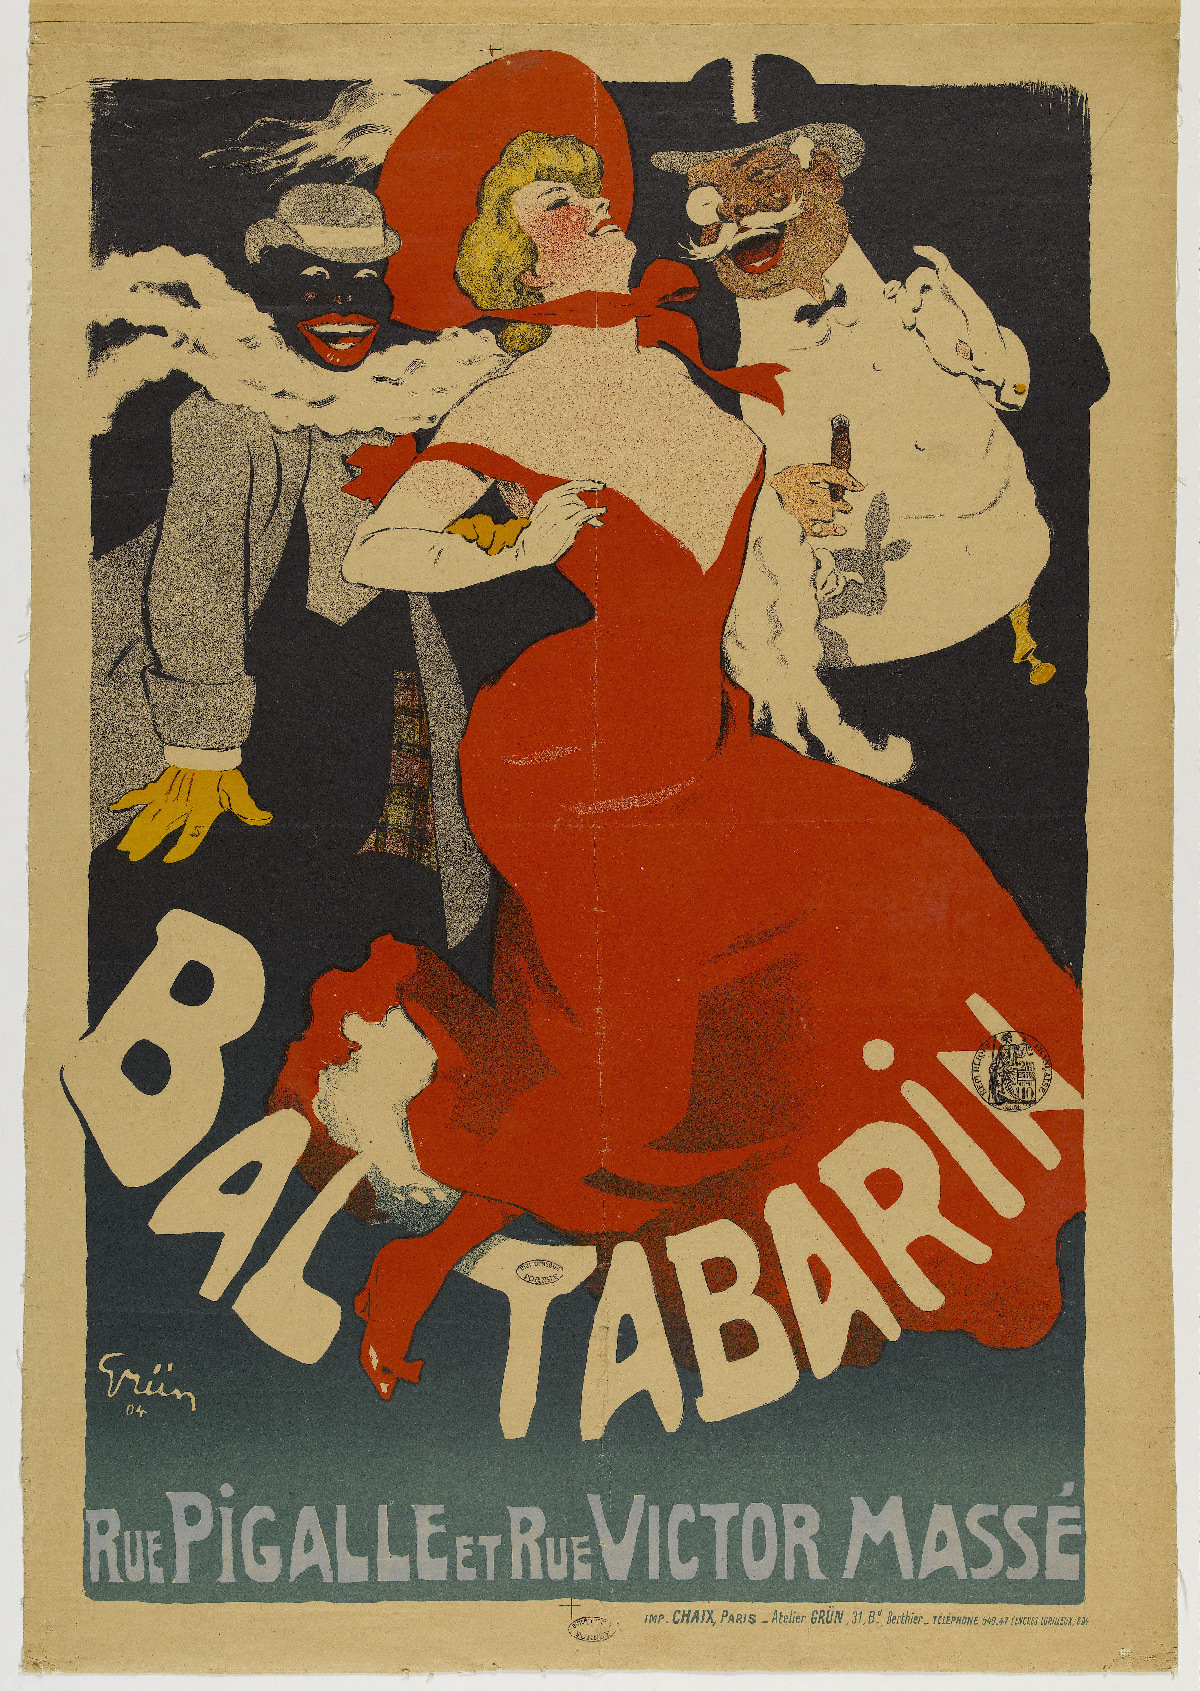  Affiche  publicitaire  pour  le bal Tabarin rue Pigalle et 